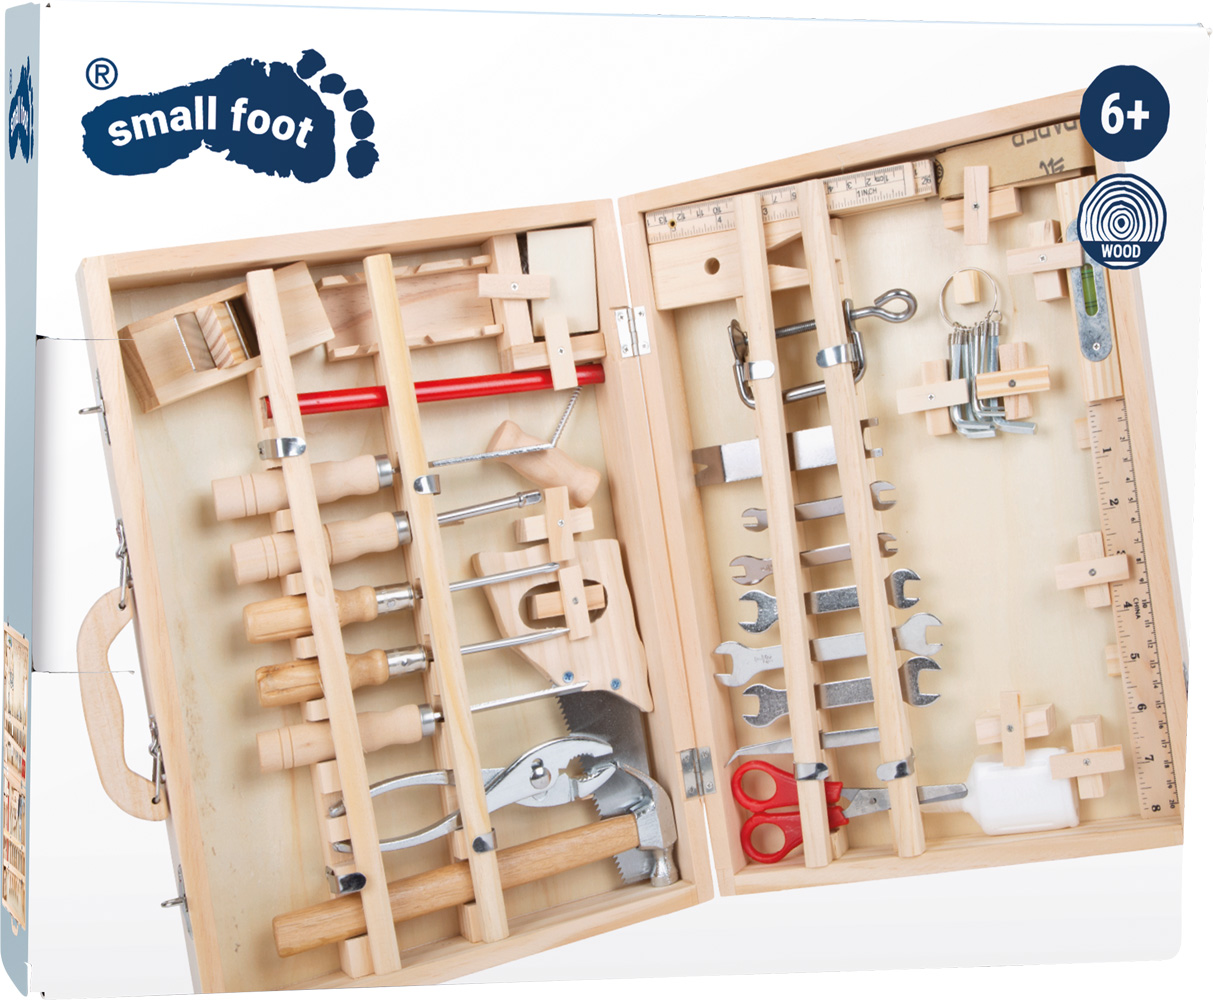 Caisse à outils  du spécialiste allemand de jouets en bois